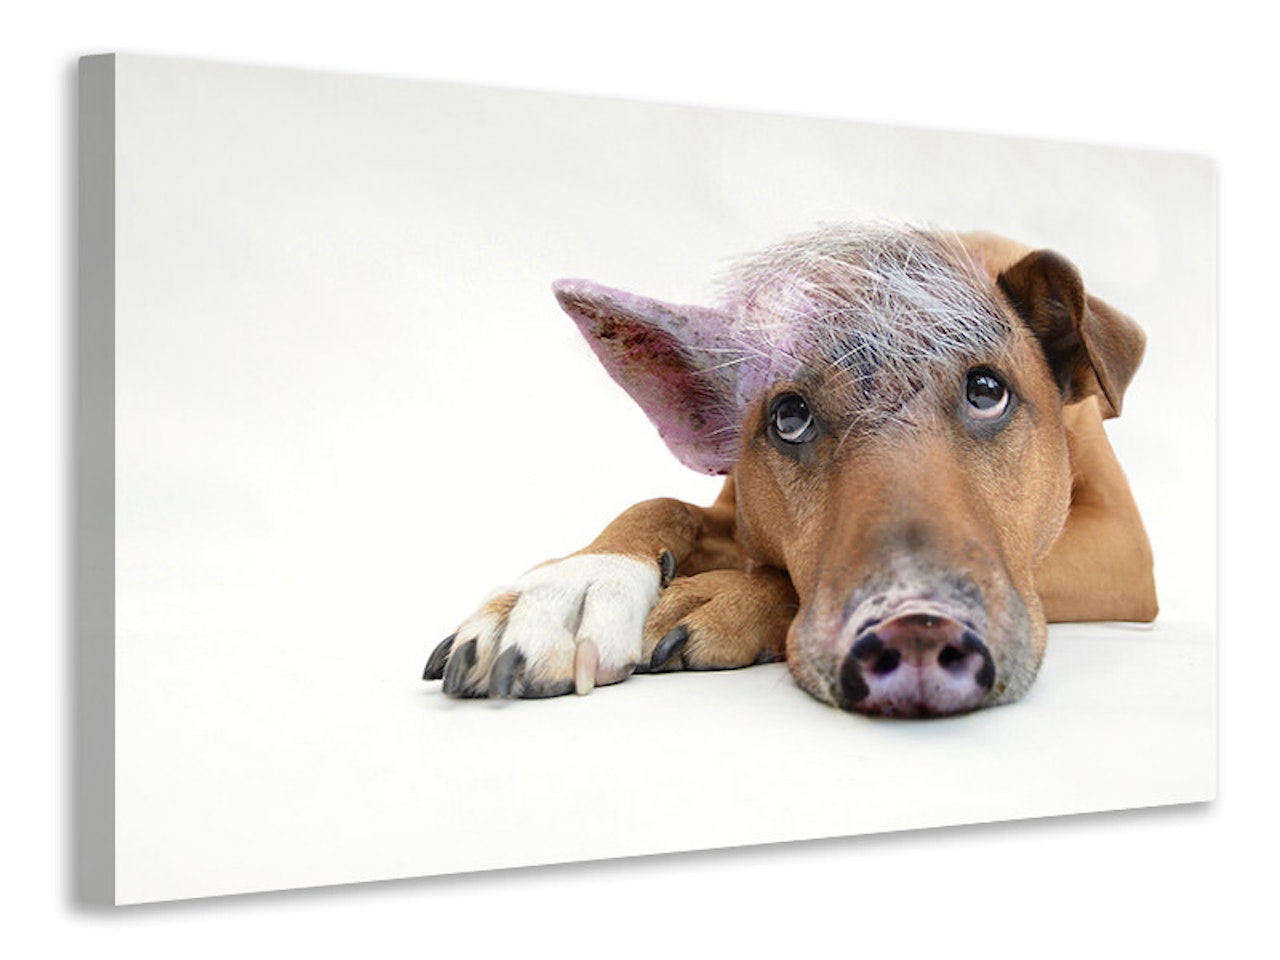 Ljuddämpande tavla - the funny pig dog